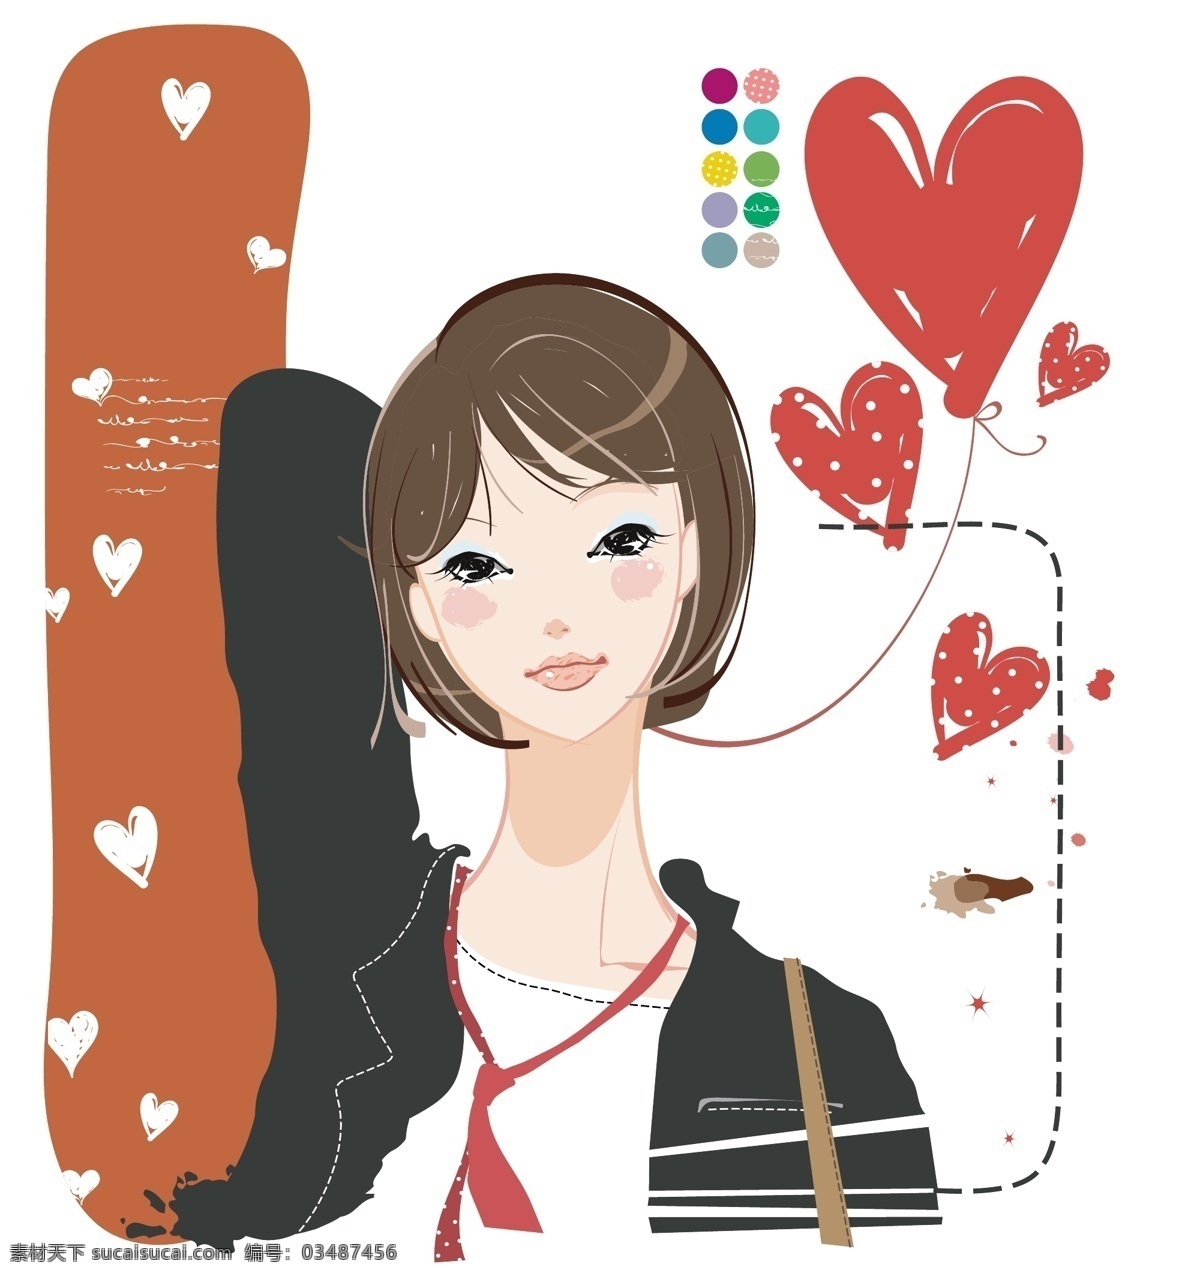 现代 时尚 女性 插画 韩国 花纹 卡通 美少女 手绘 矢量图 矢量人物